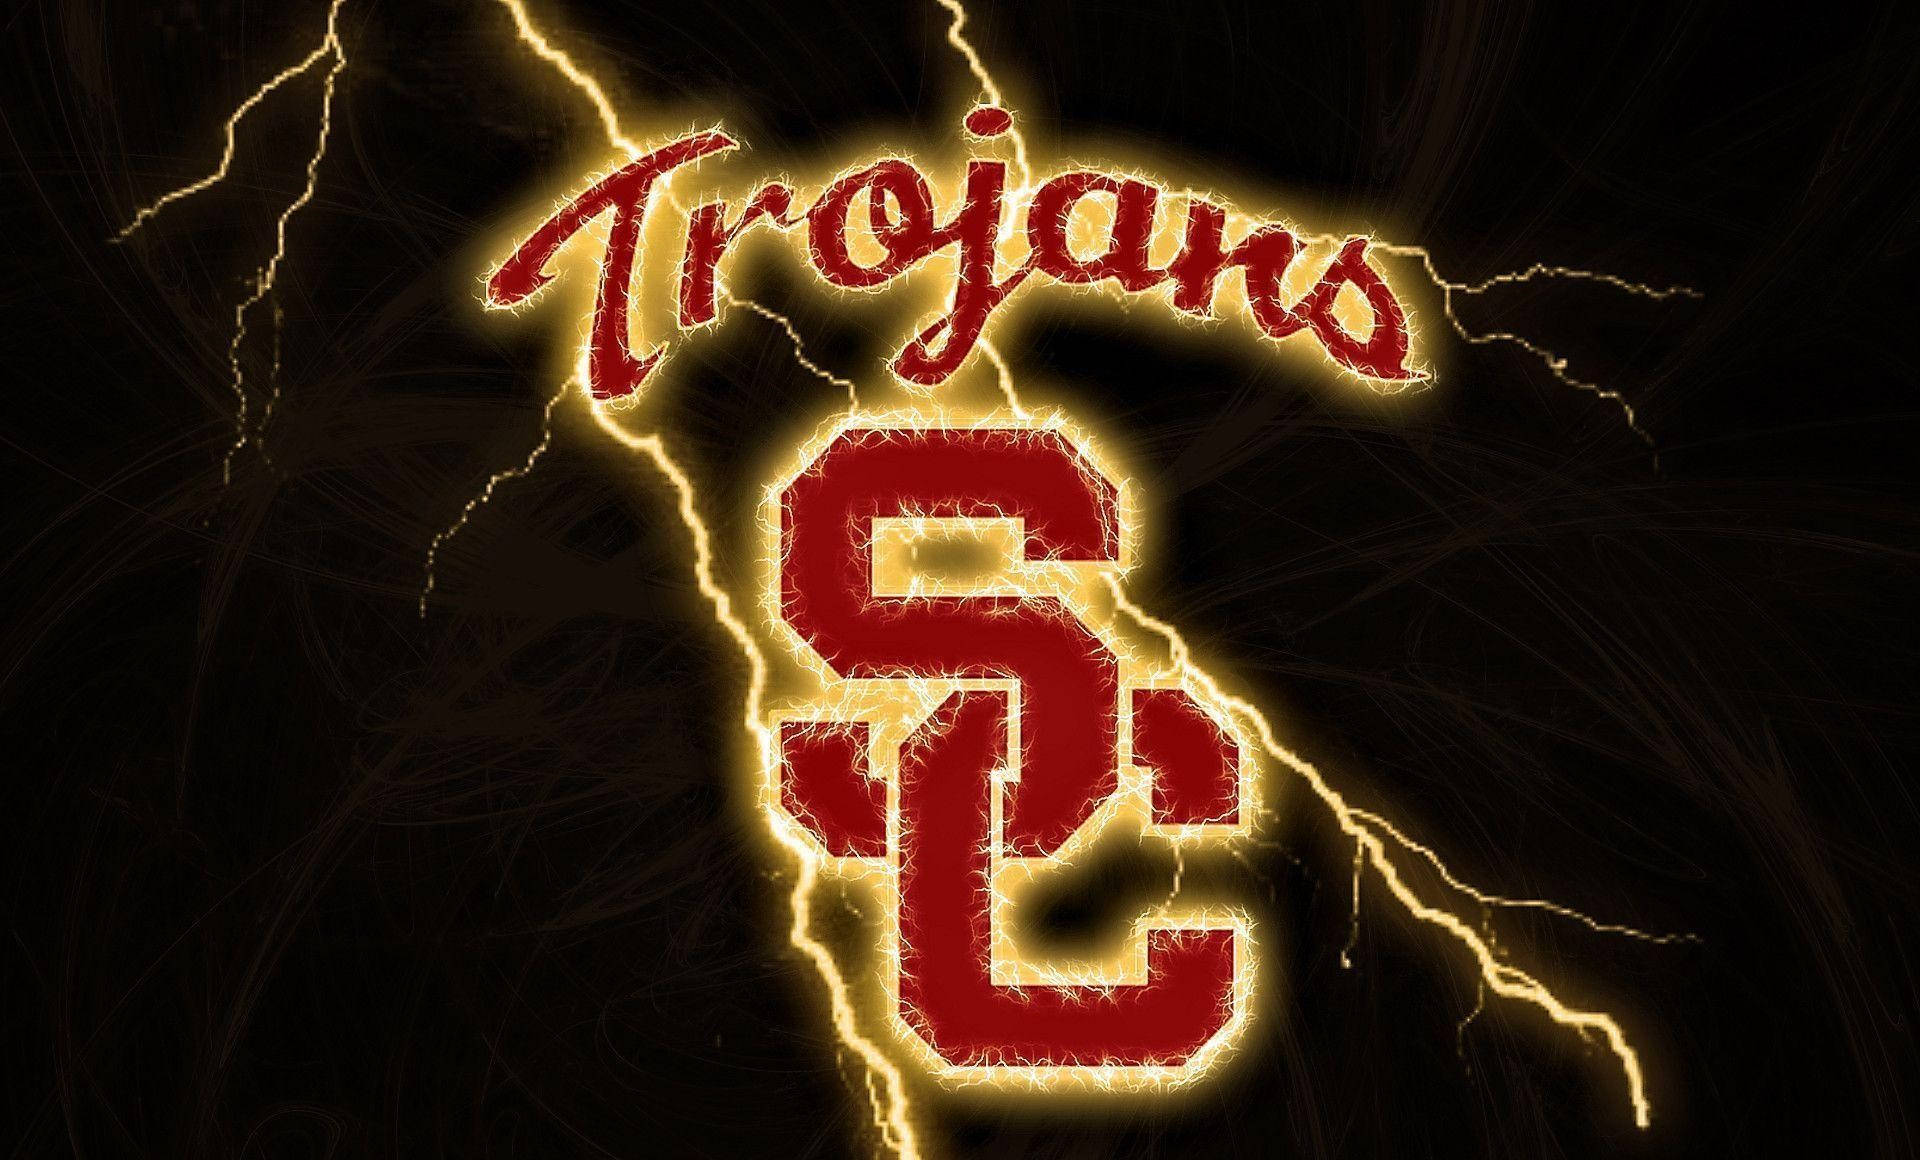 Universitàdella California Del Sud Trojans Lightning Sfondo